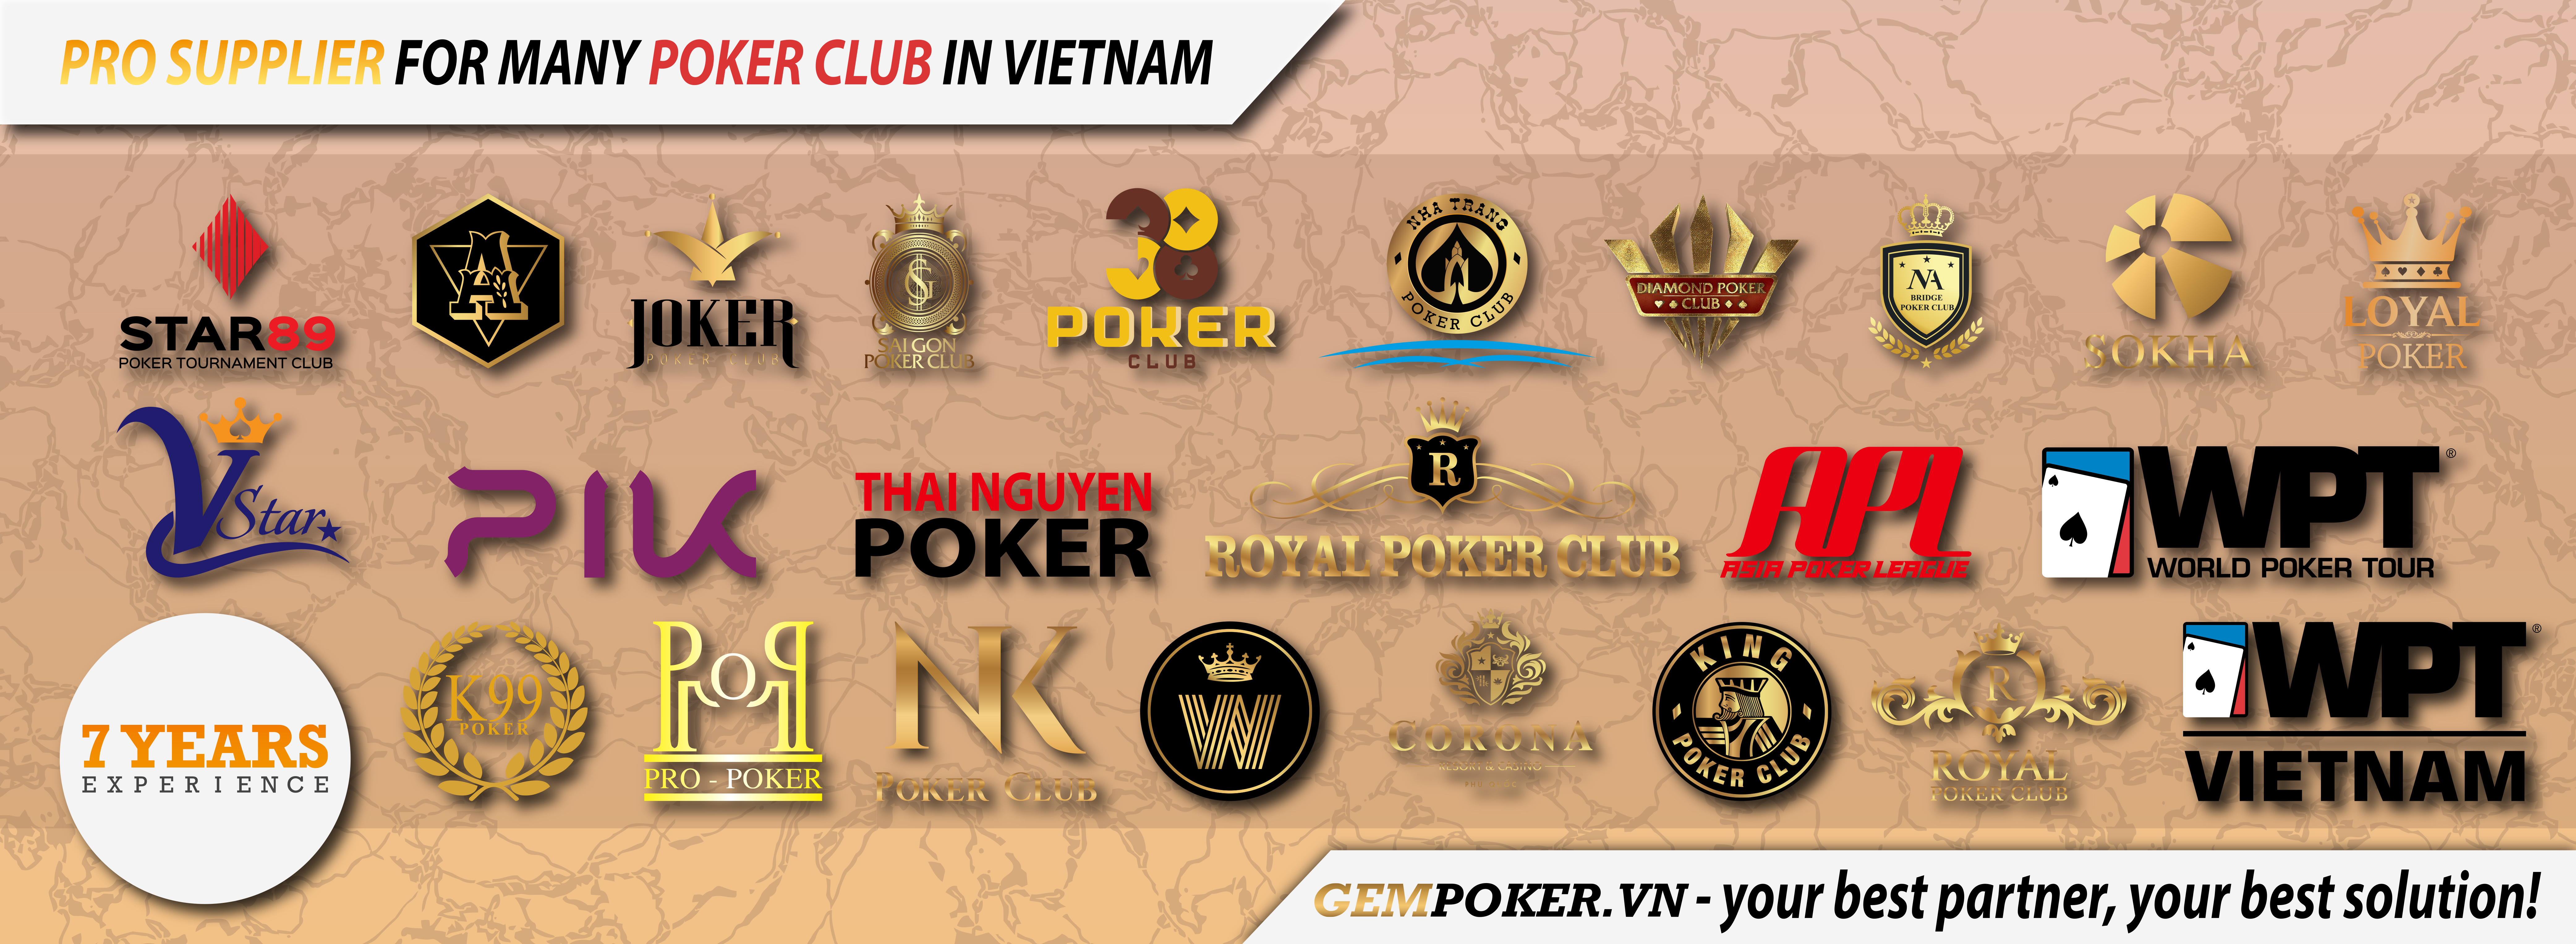 poker club mua đồ ở đâu, bán đồ poker, mua phỉnh poker, mua chip poker